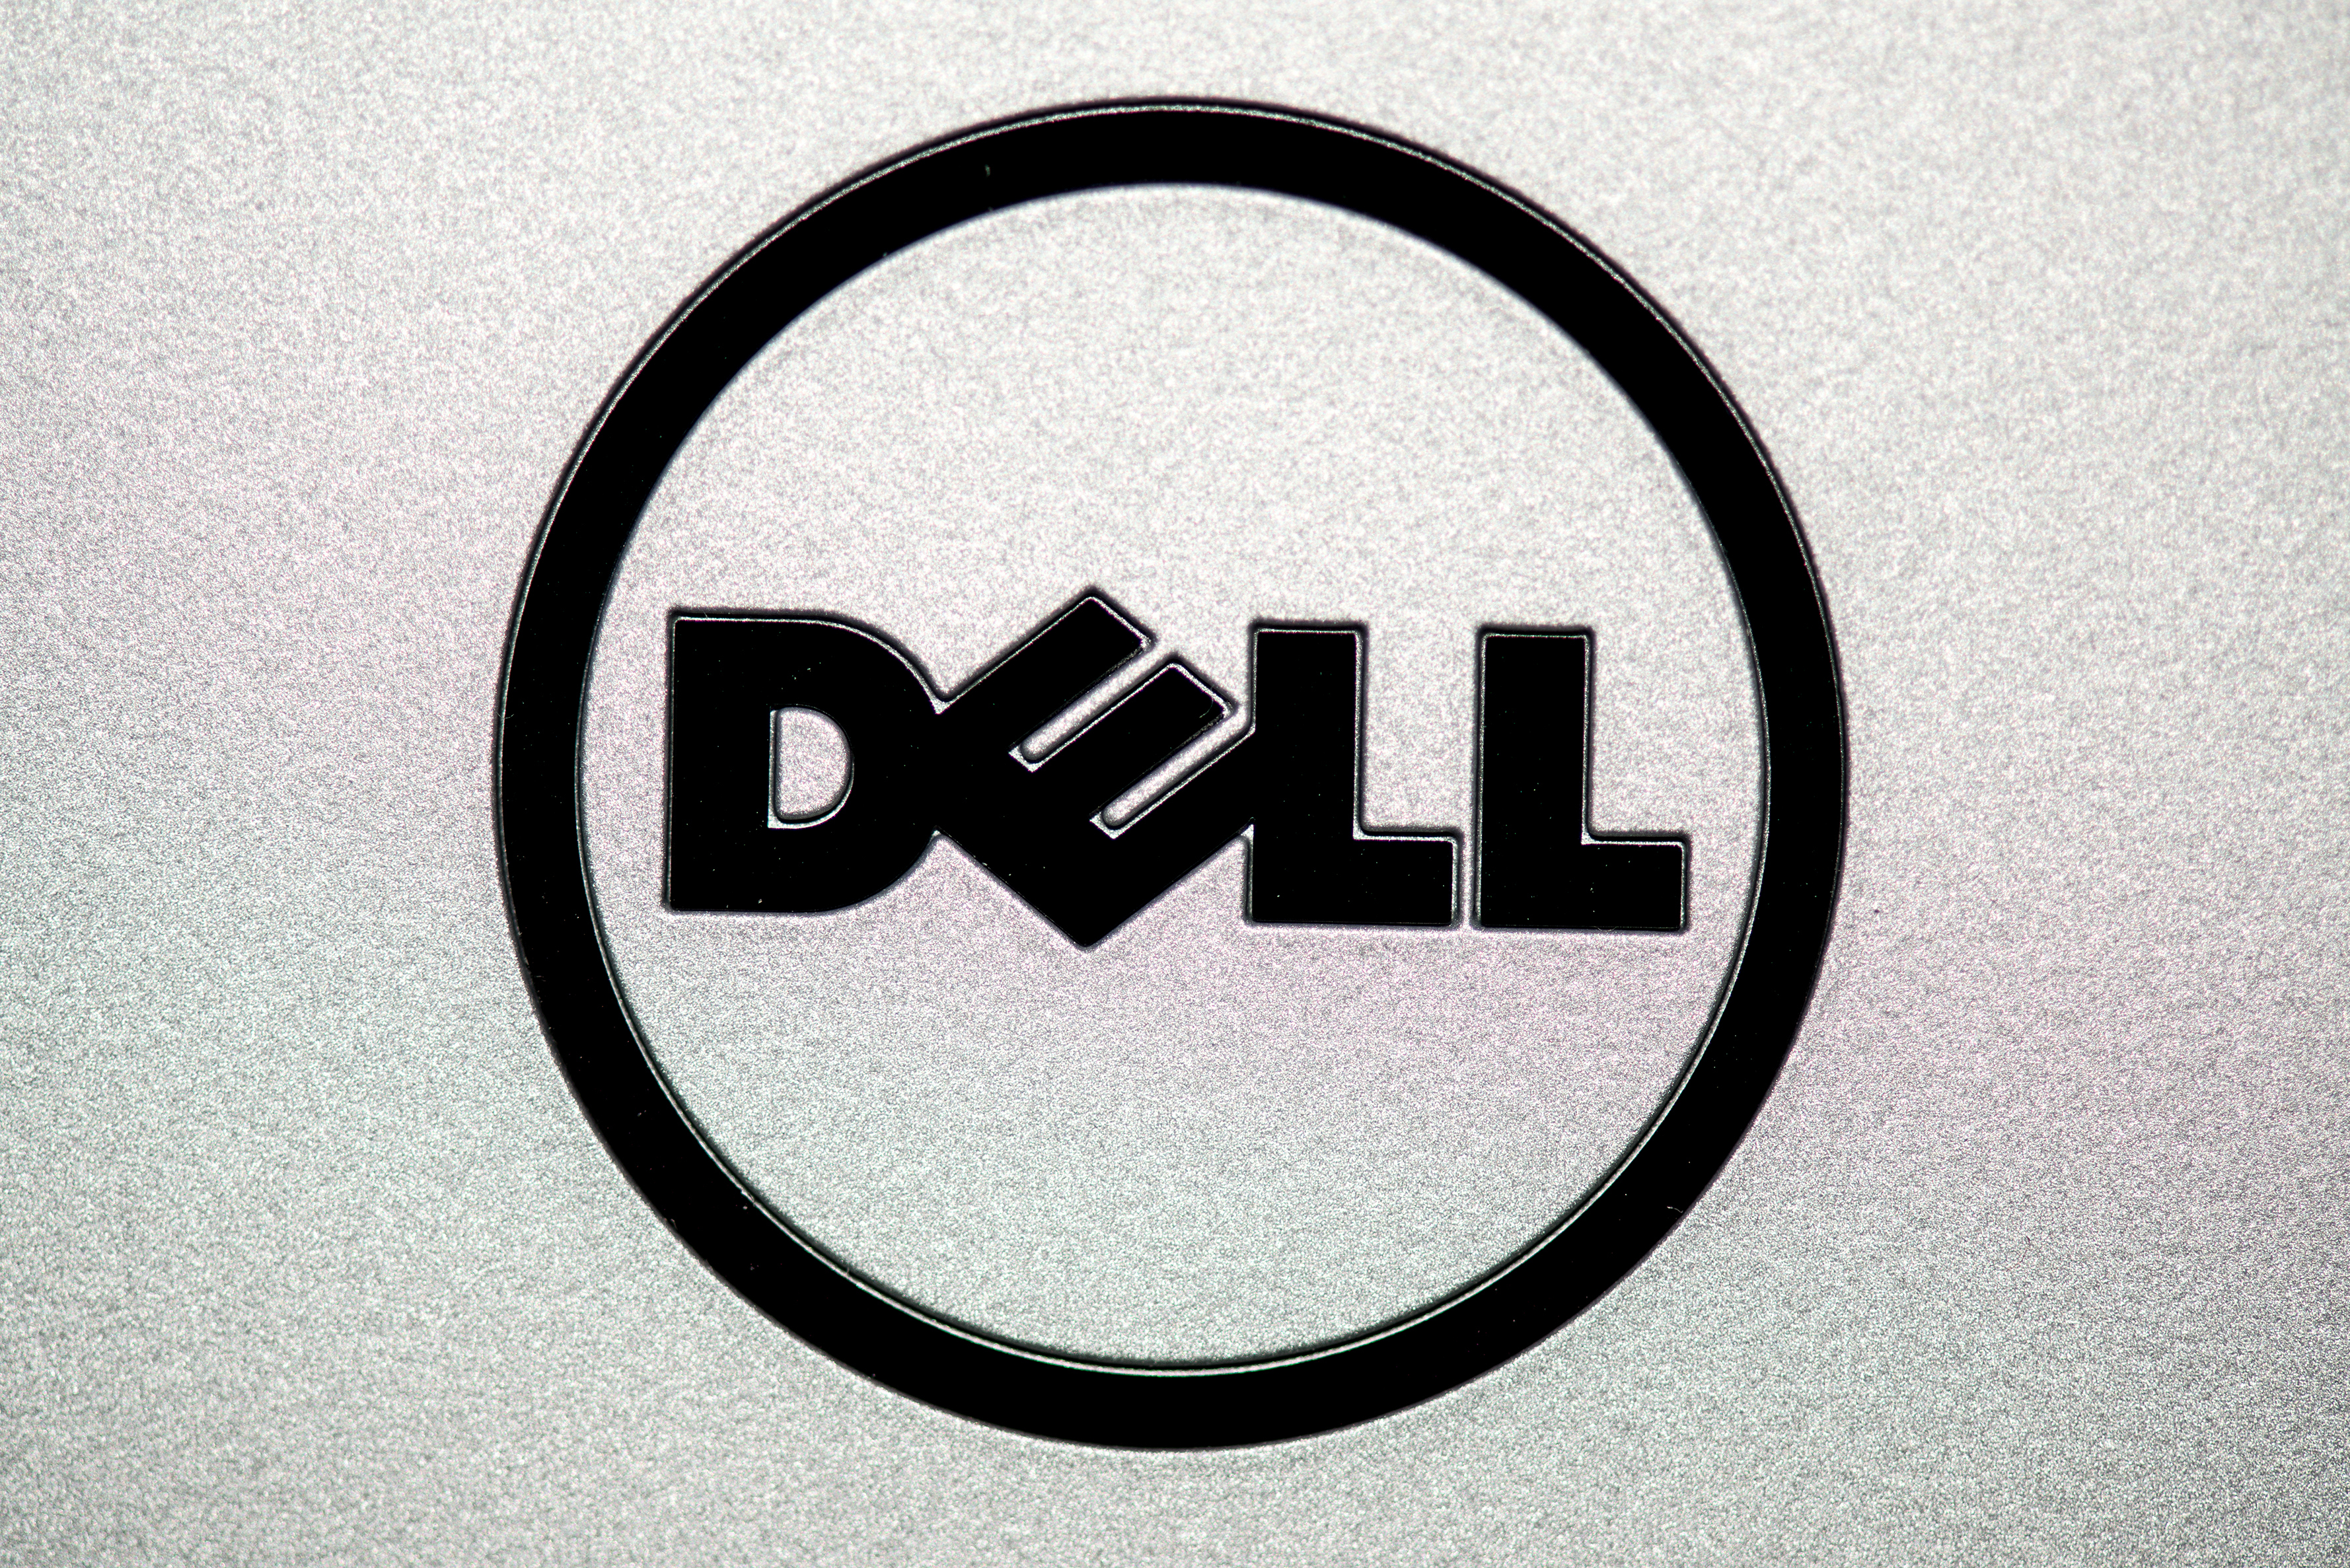 dell computer logo